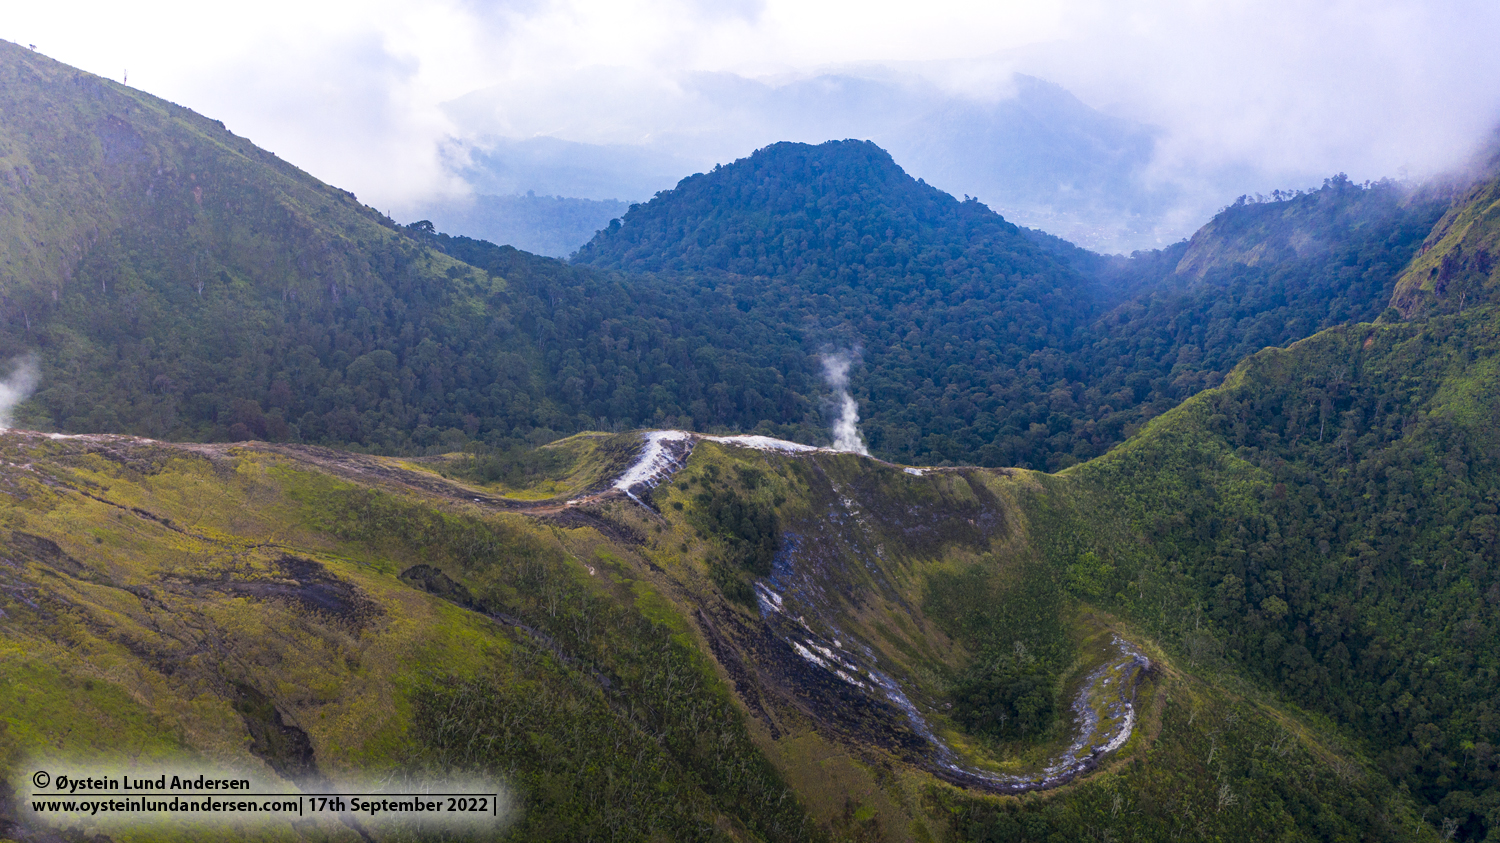 Guntur volcano Indonesia 2022 aerial